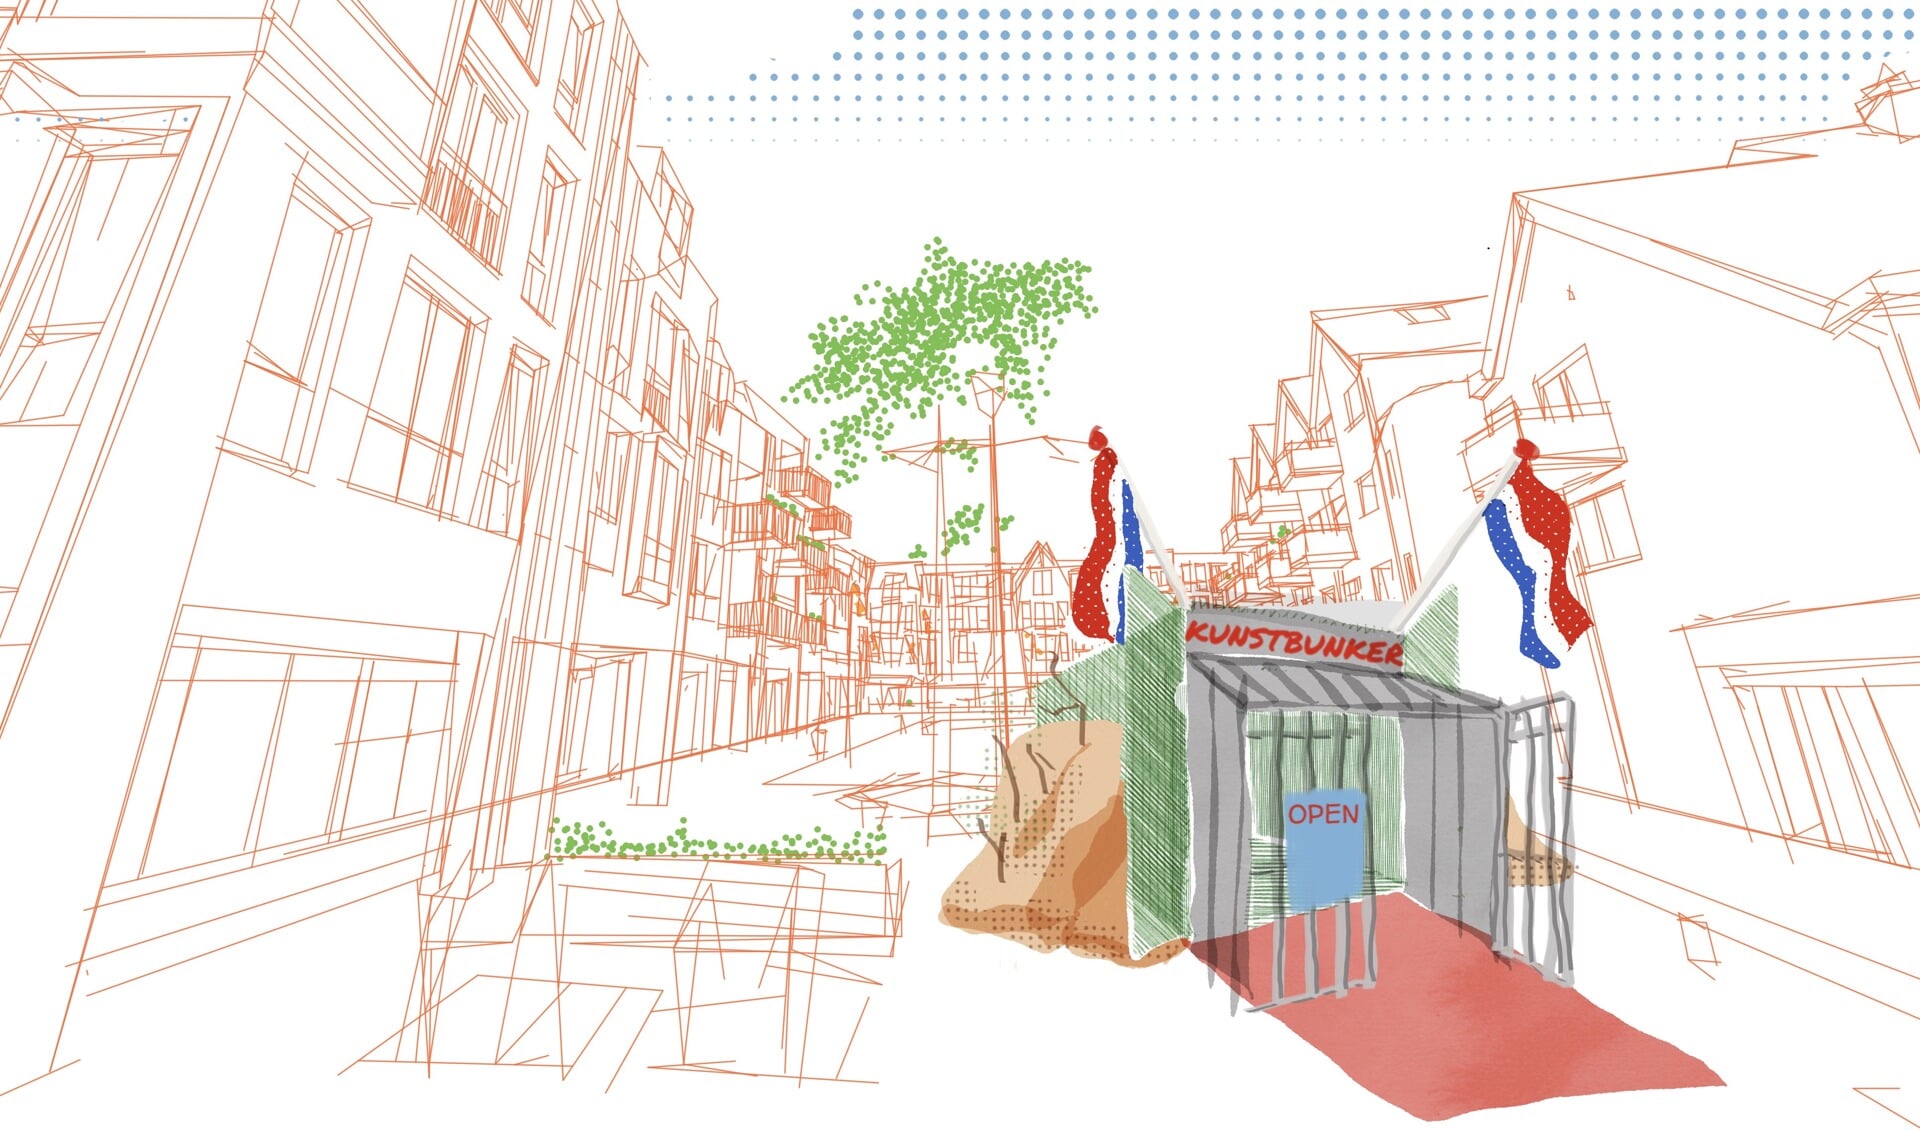 Tekening van de Pop-up Kunstbunker in het centrum van Castricum.